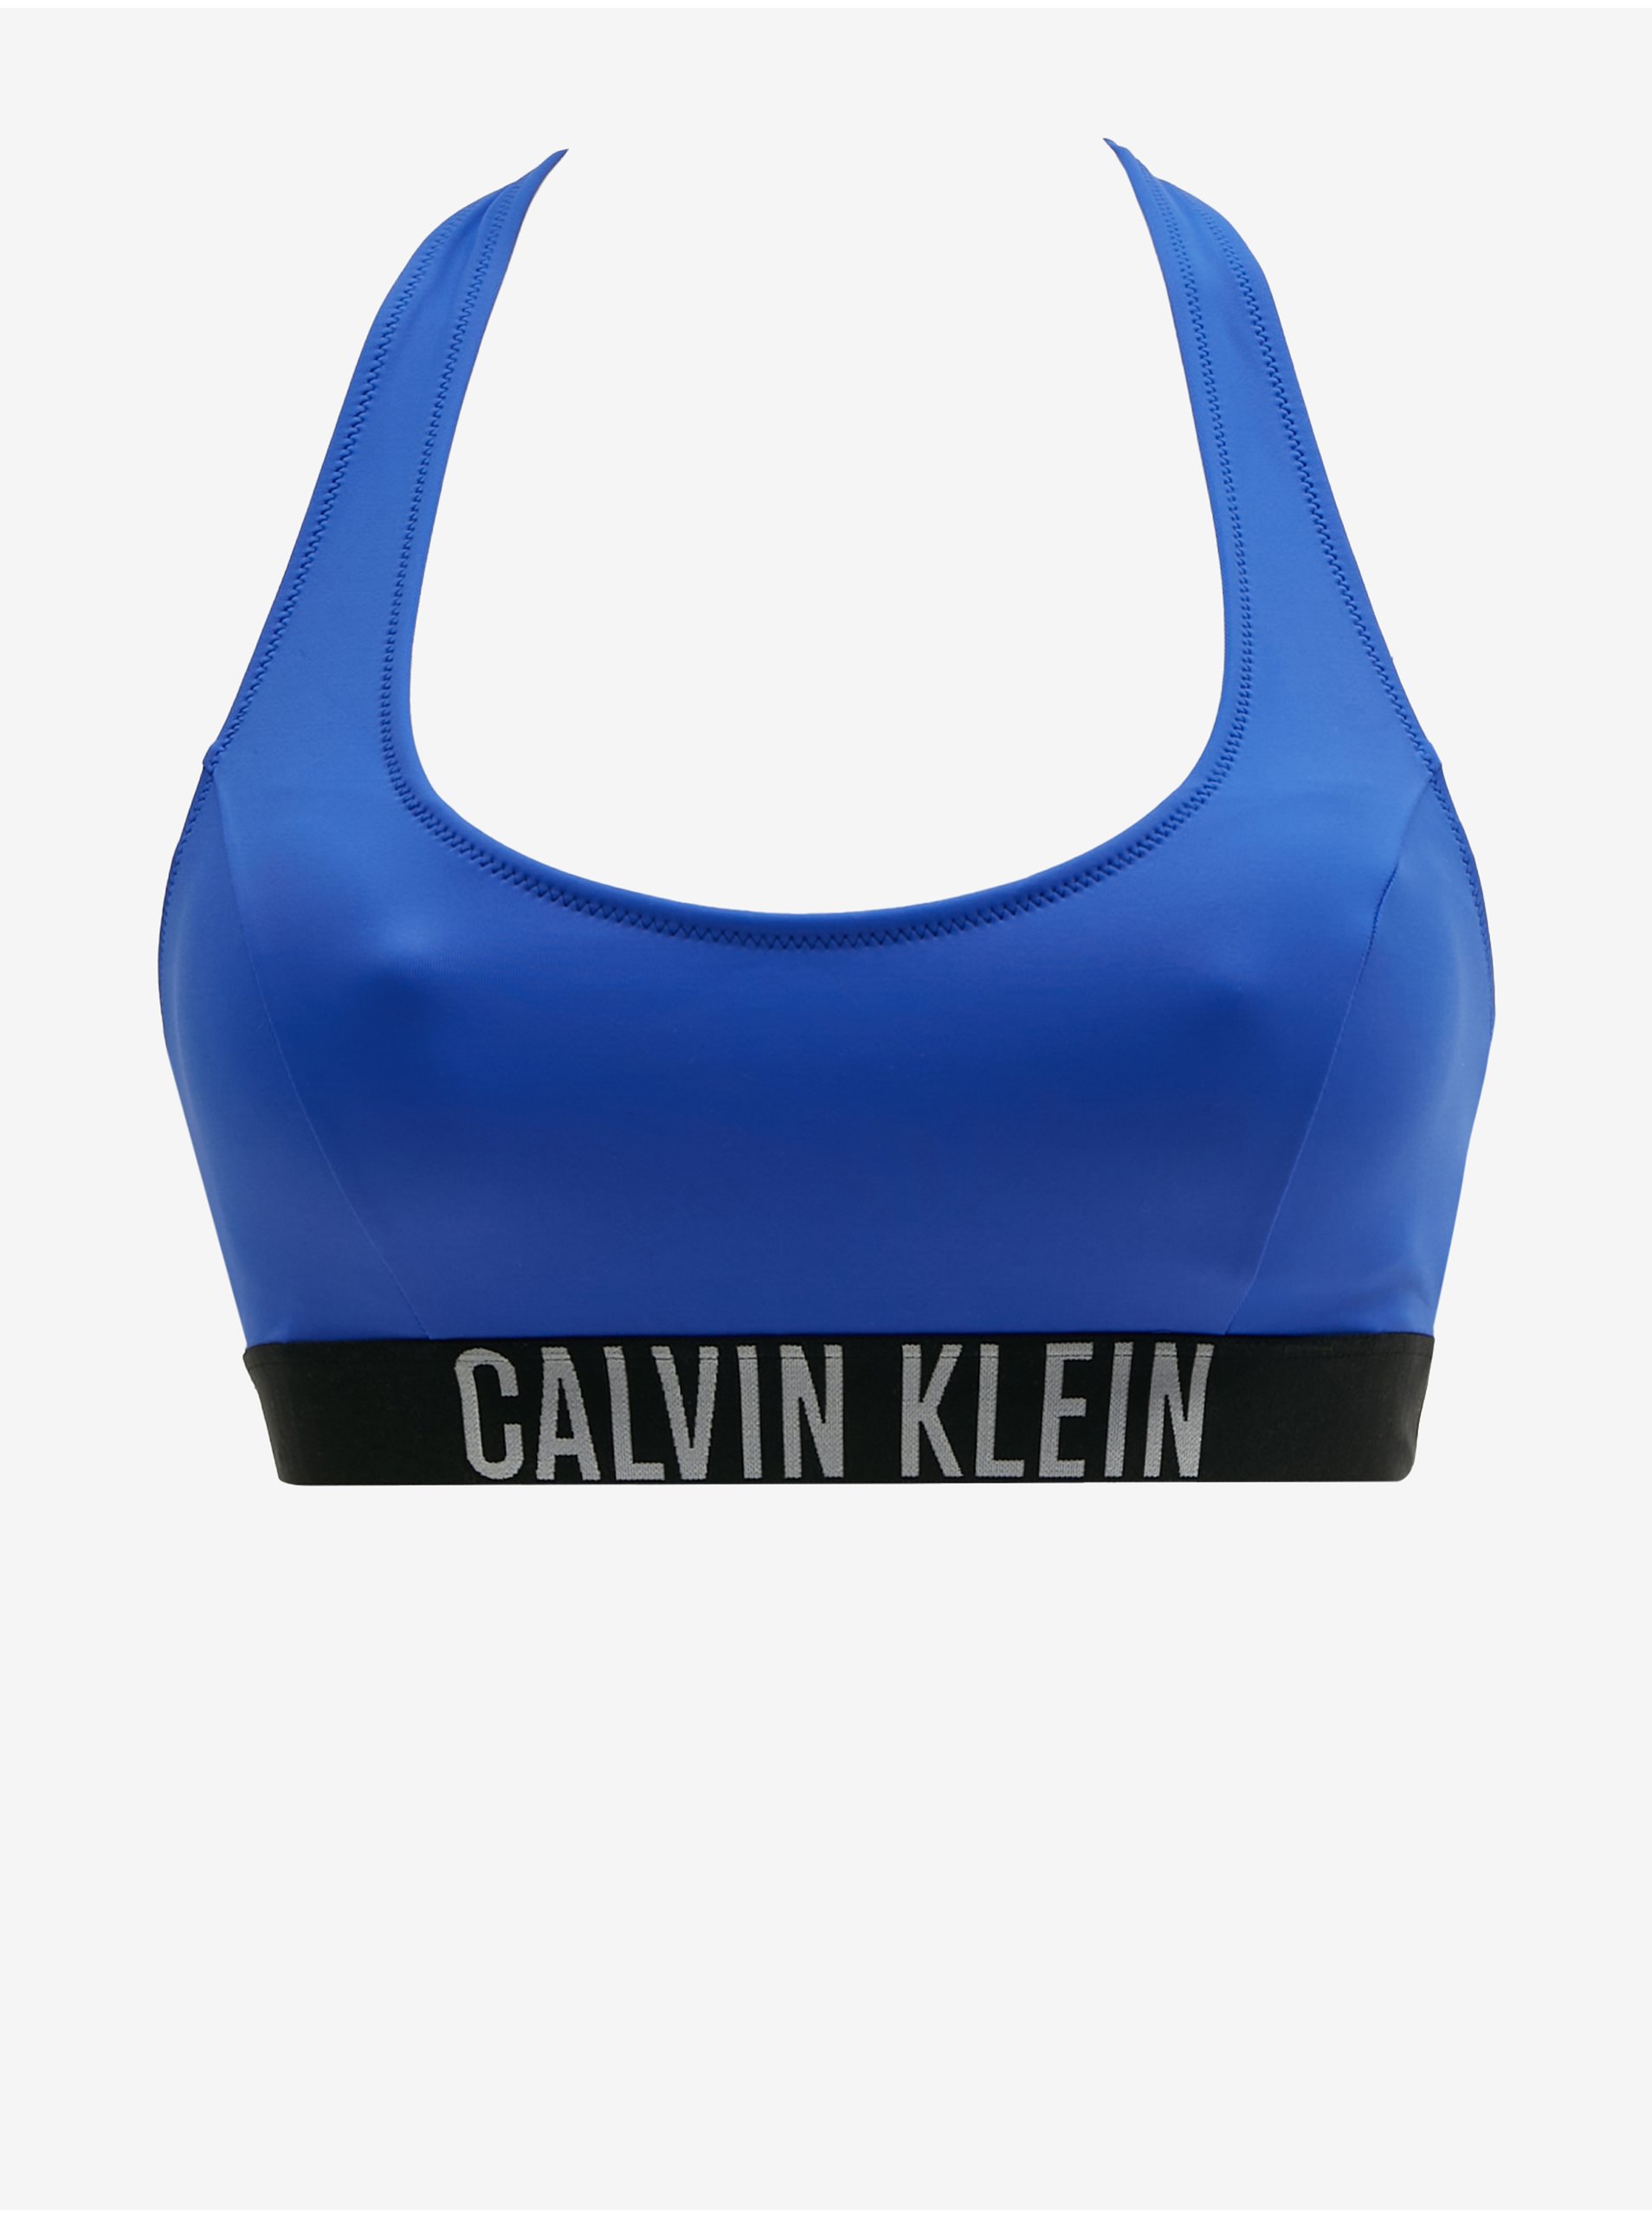 Lacno Tmavomodrý dámsky horný diel plaviek Calvin Klein Underwear